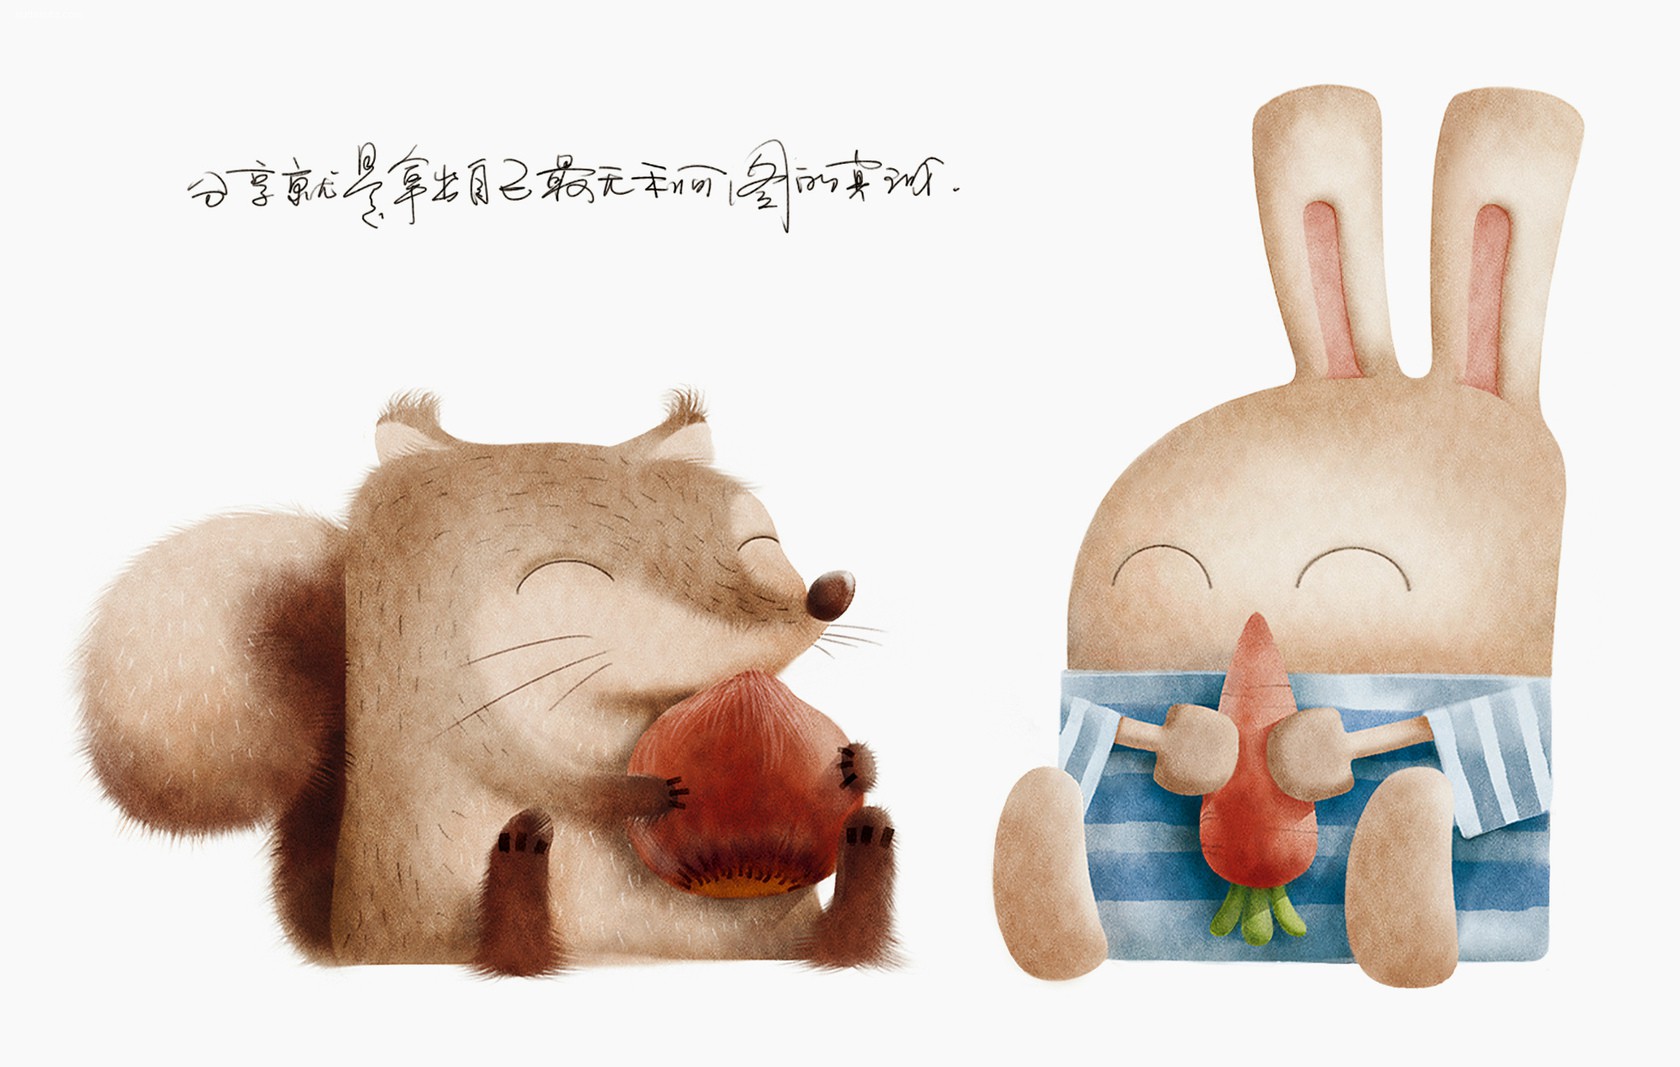 原创插画《两只兔子的生活立场》 - 苏打苏塔设